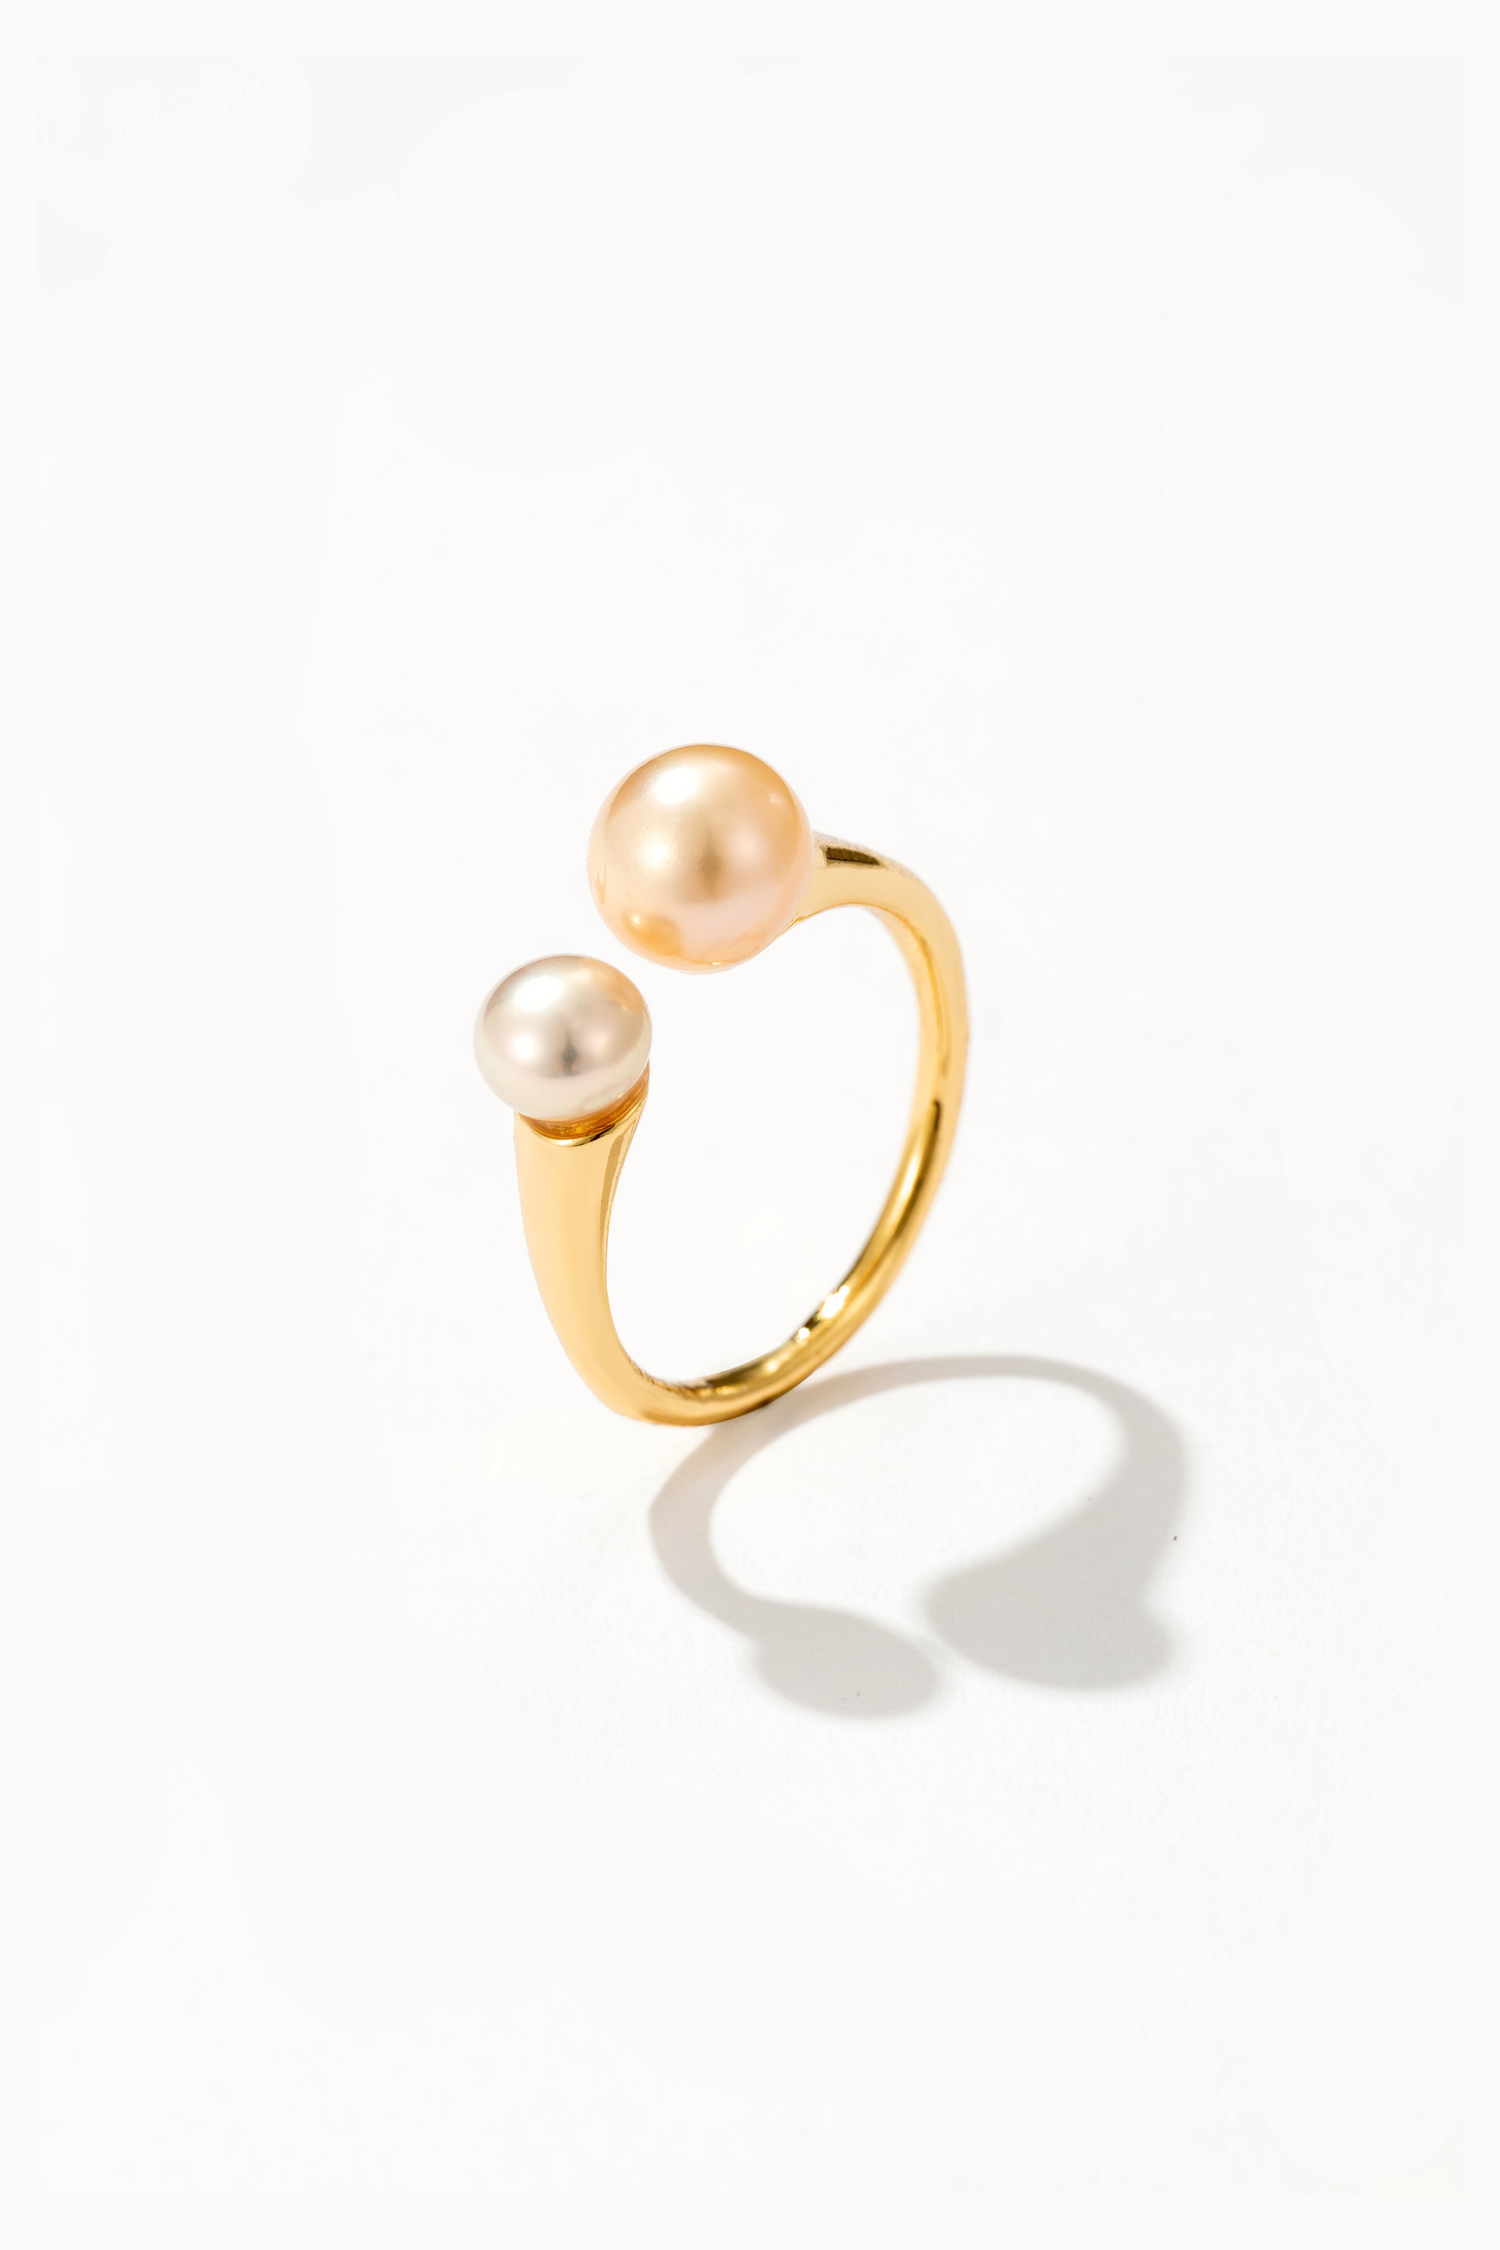 Blush Pink Pearl Ring